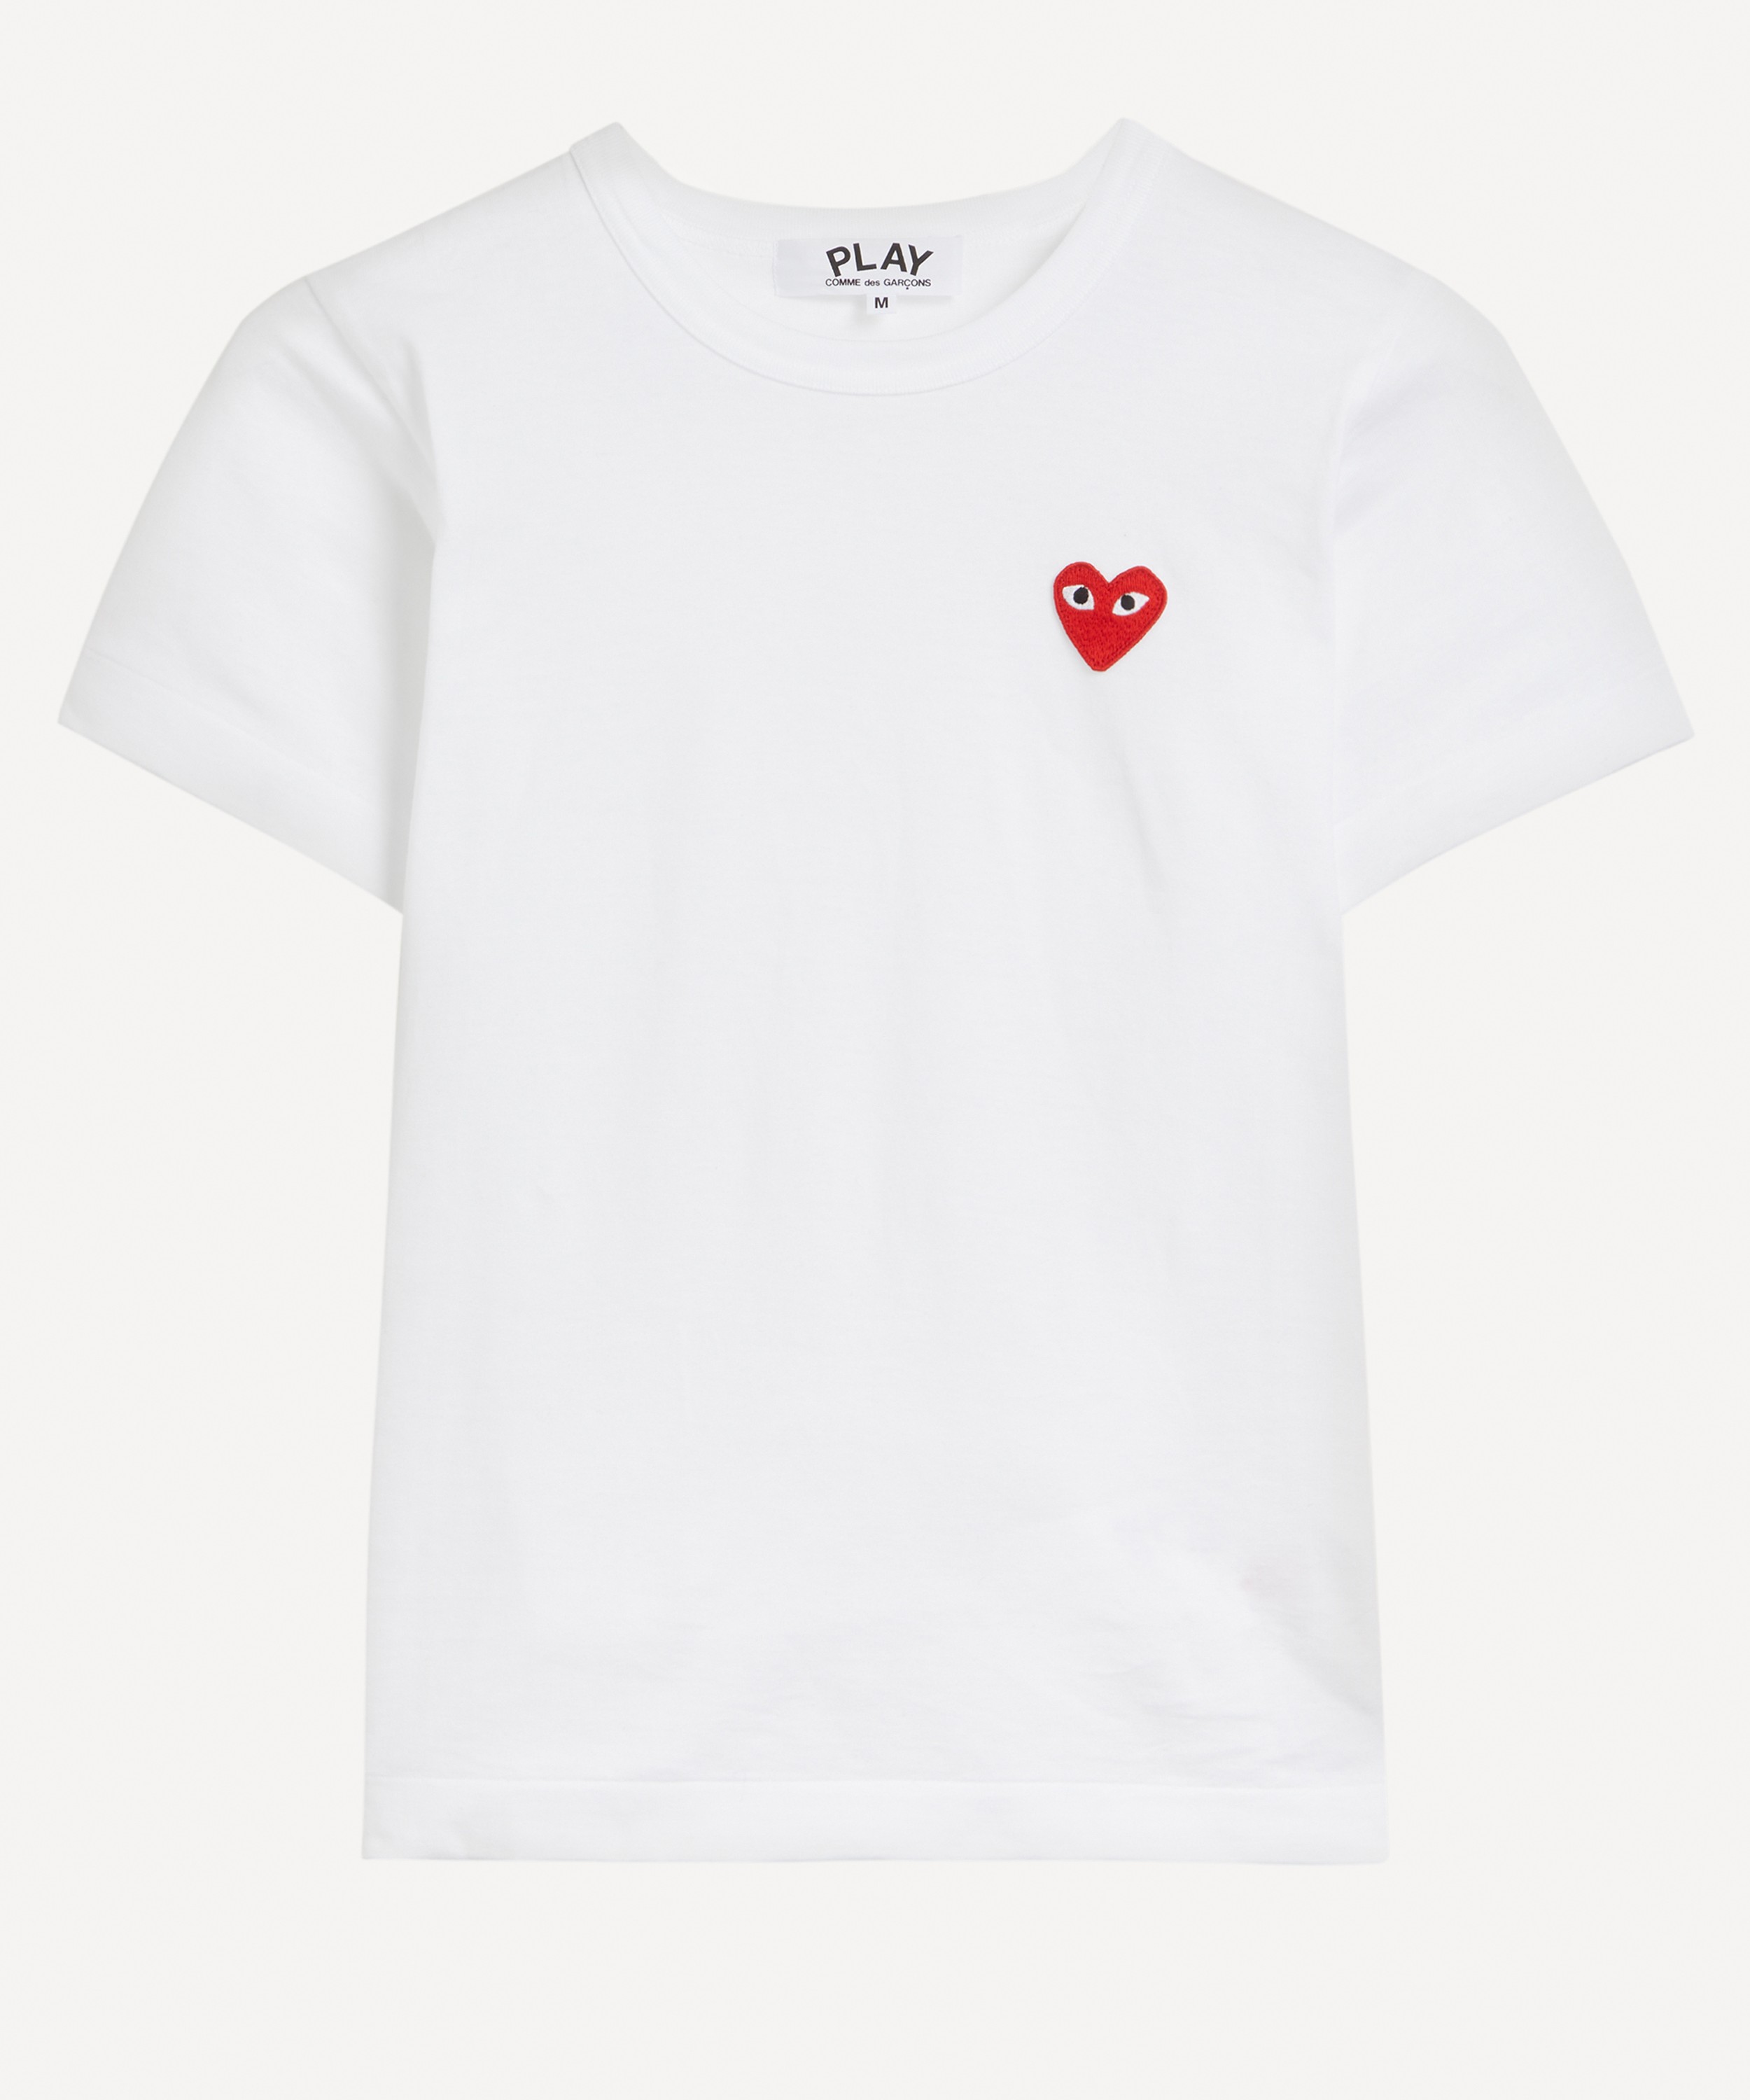 Comme des Garçons Play - Black Heart Appliqué T-Shirt image number null